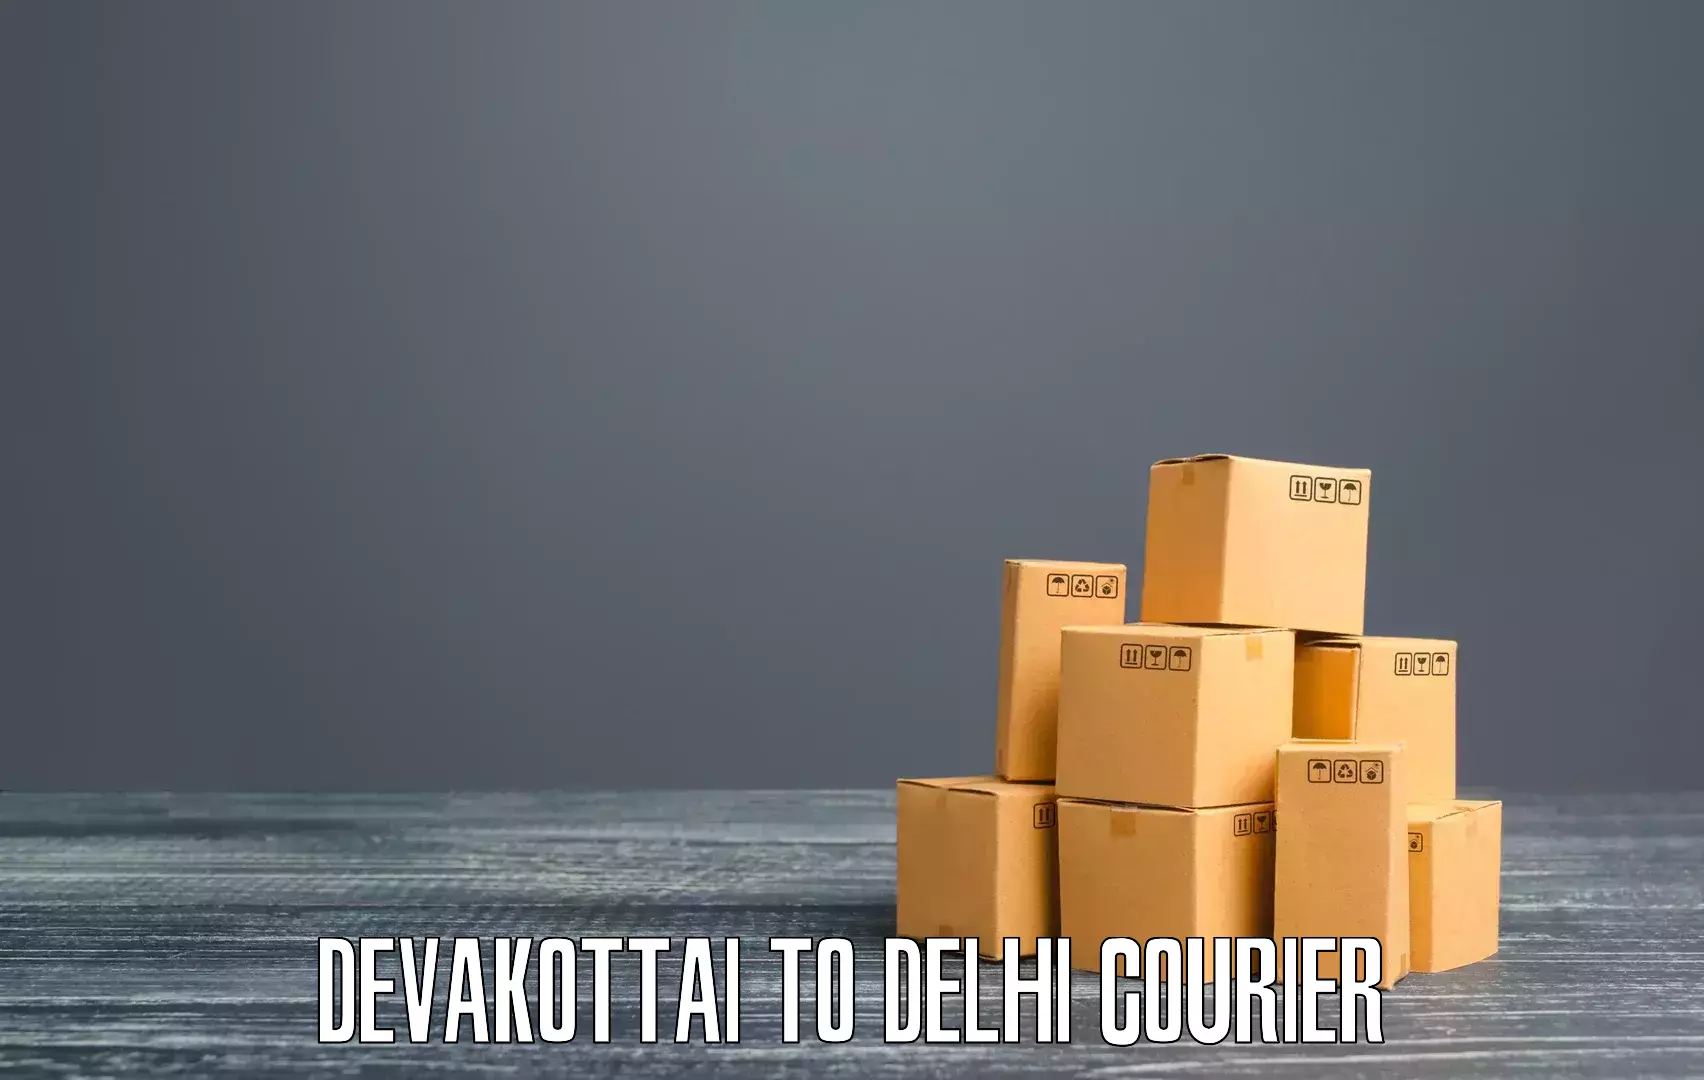 24/7 shipping services Devakottai to Delhi